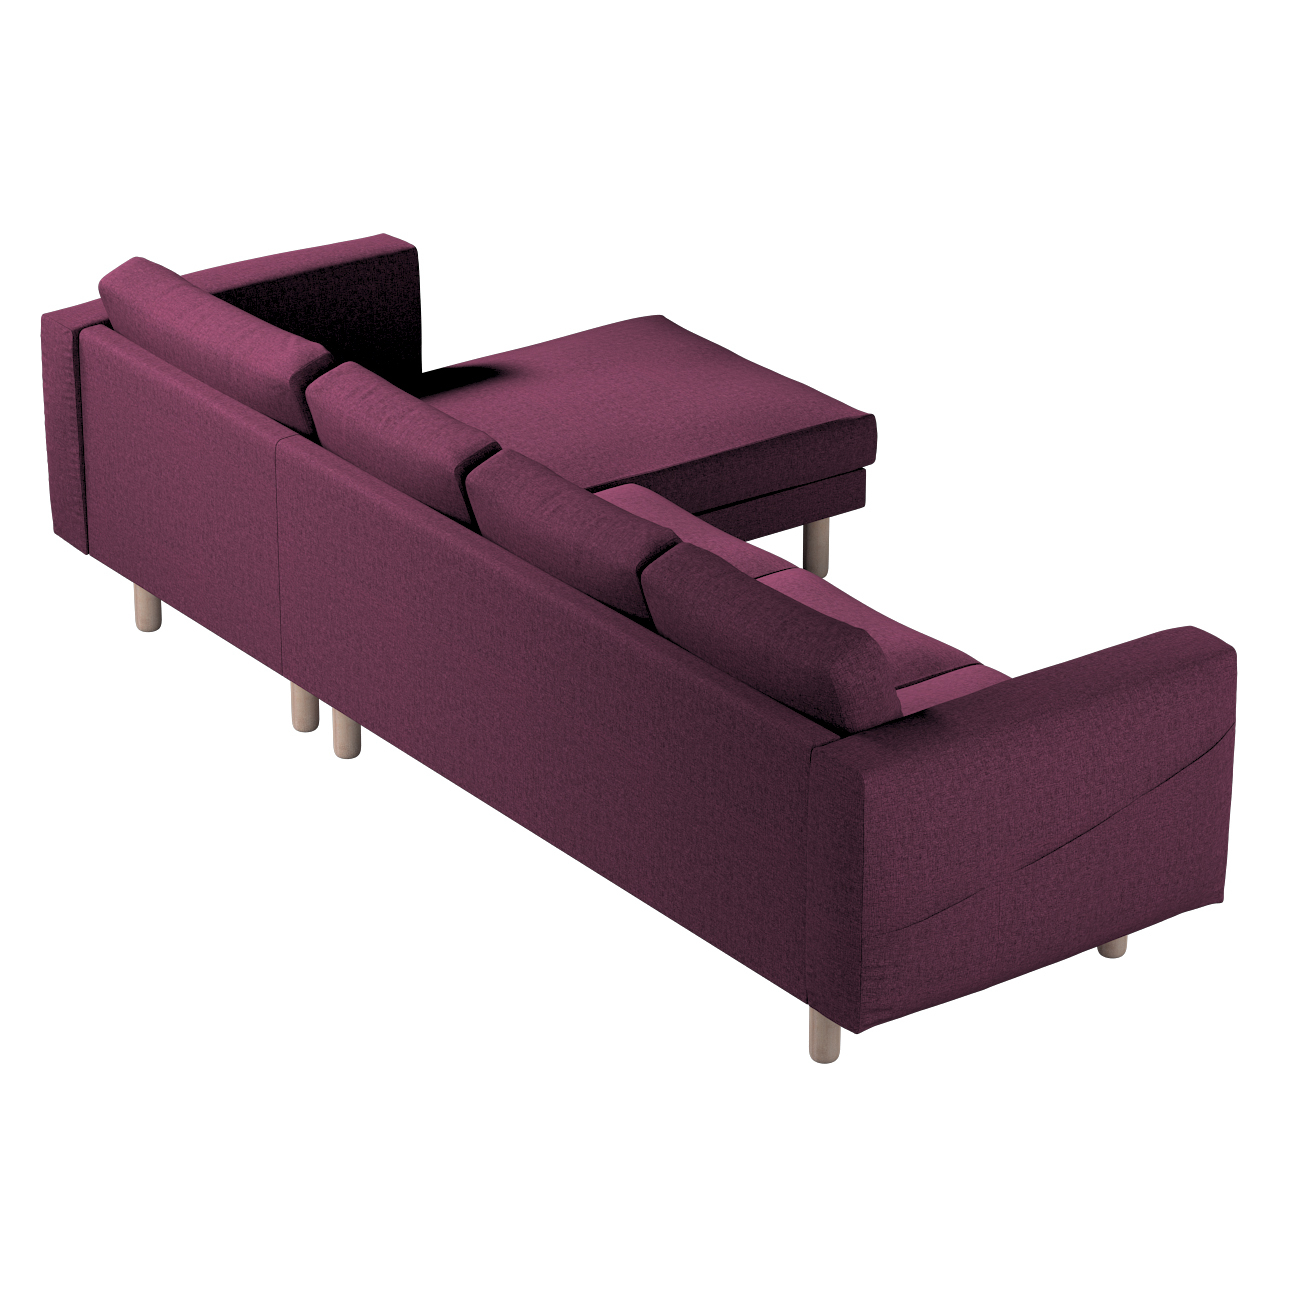 Bezug für Norsborg 4-Sitzer Sofa mit Recamiere, pflaumenviolett, Norsborg B günstig online kaufen